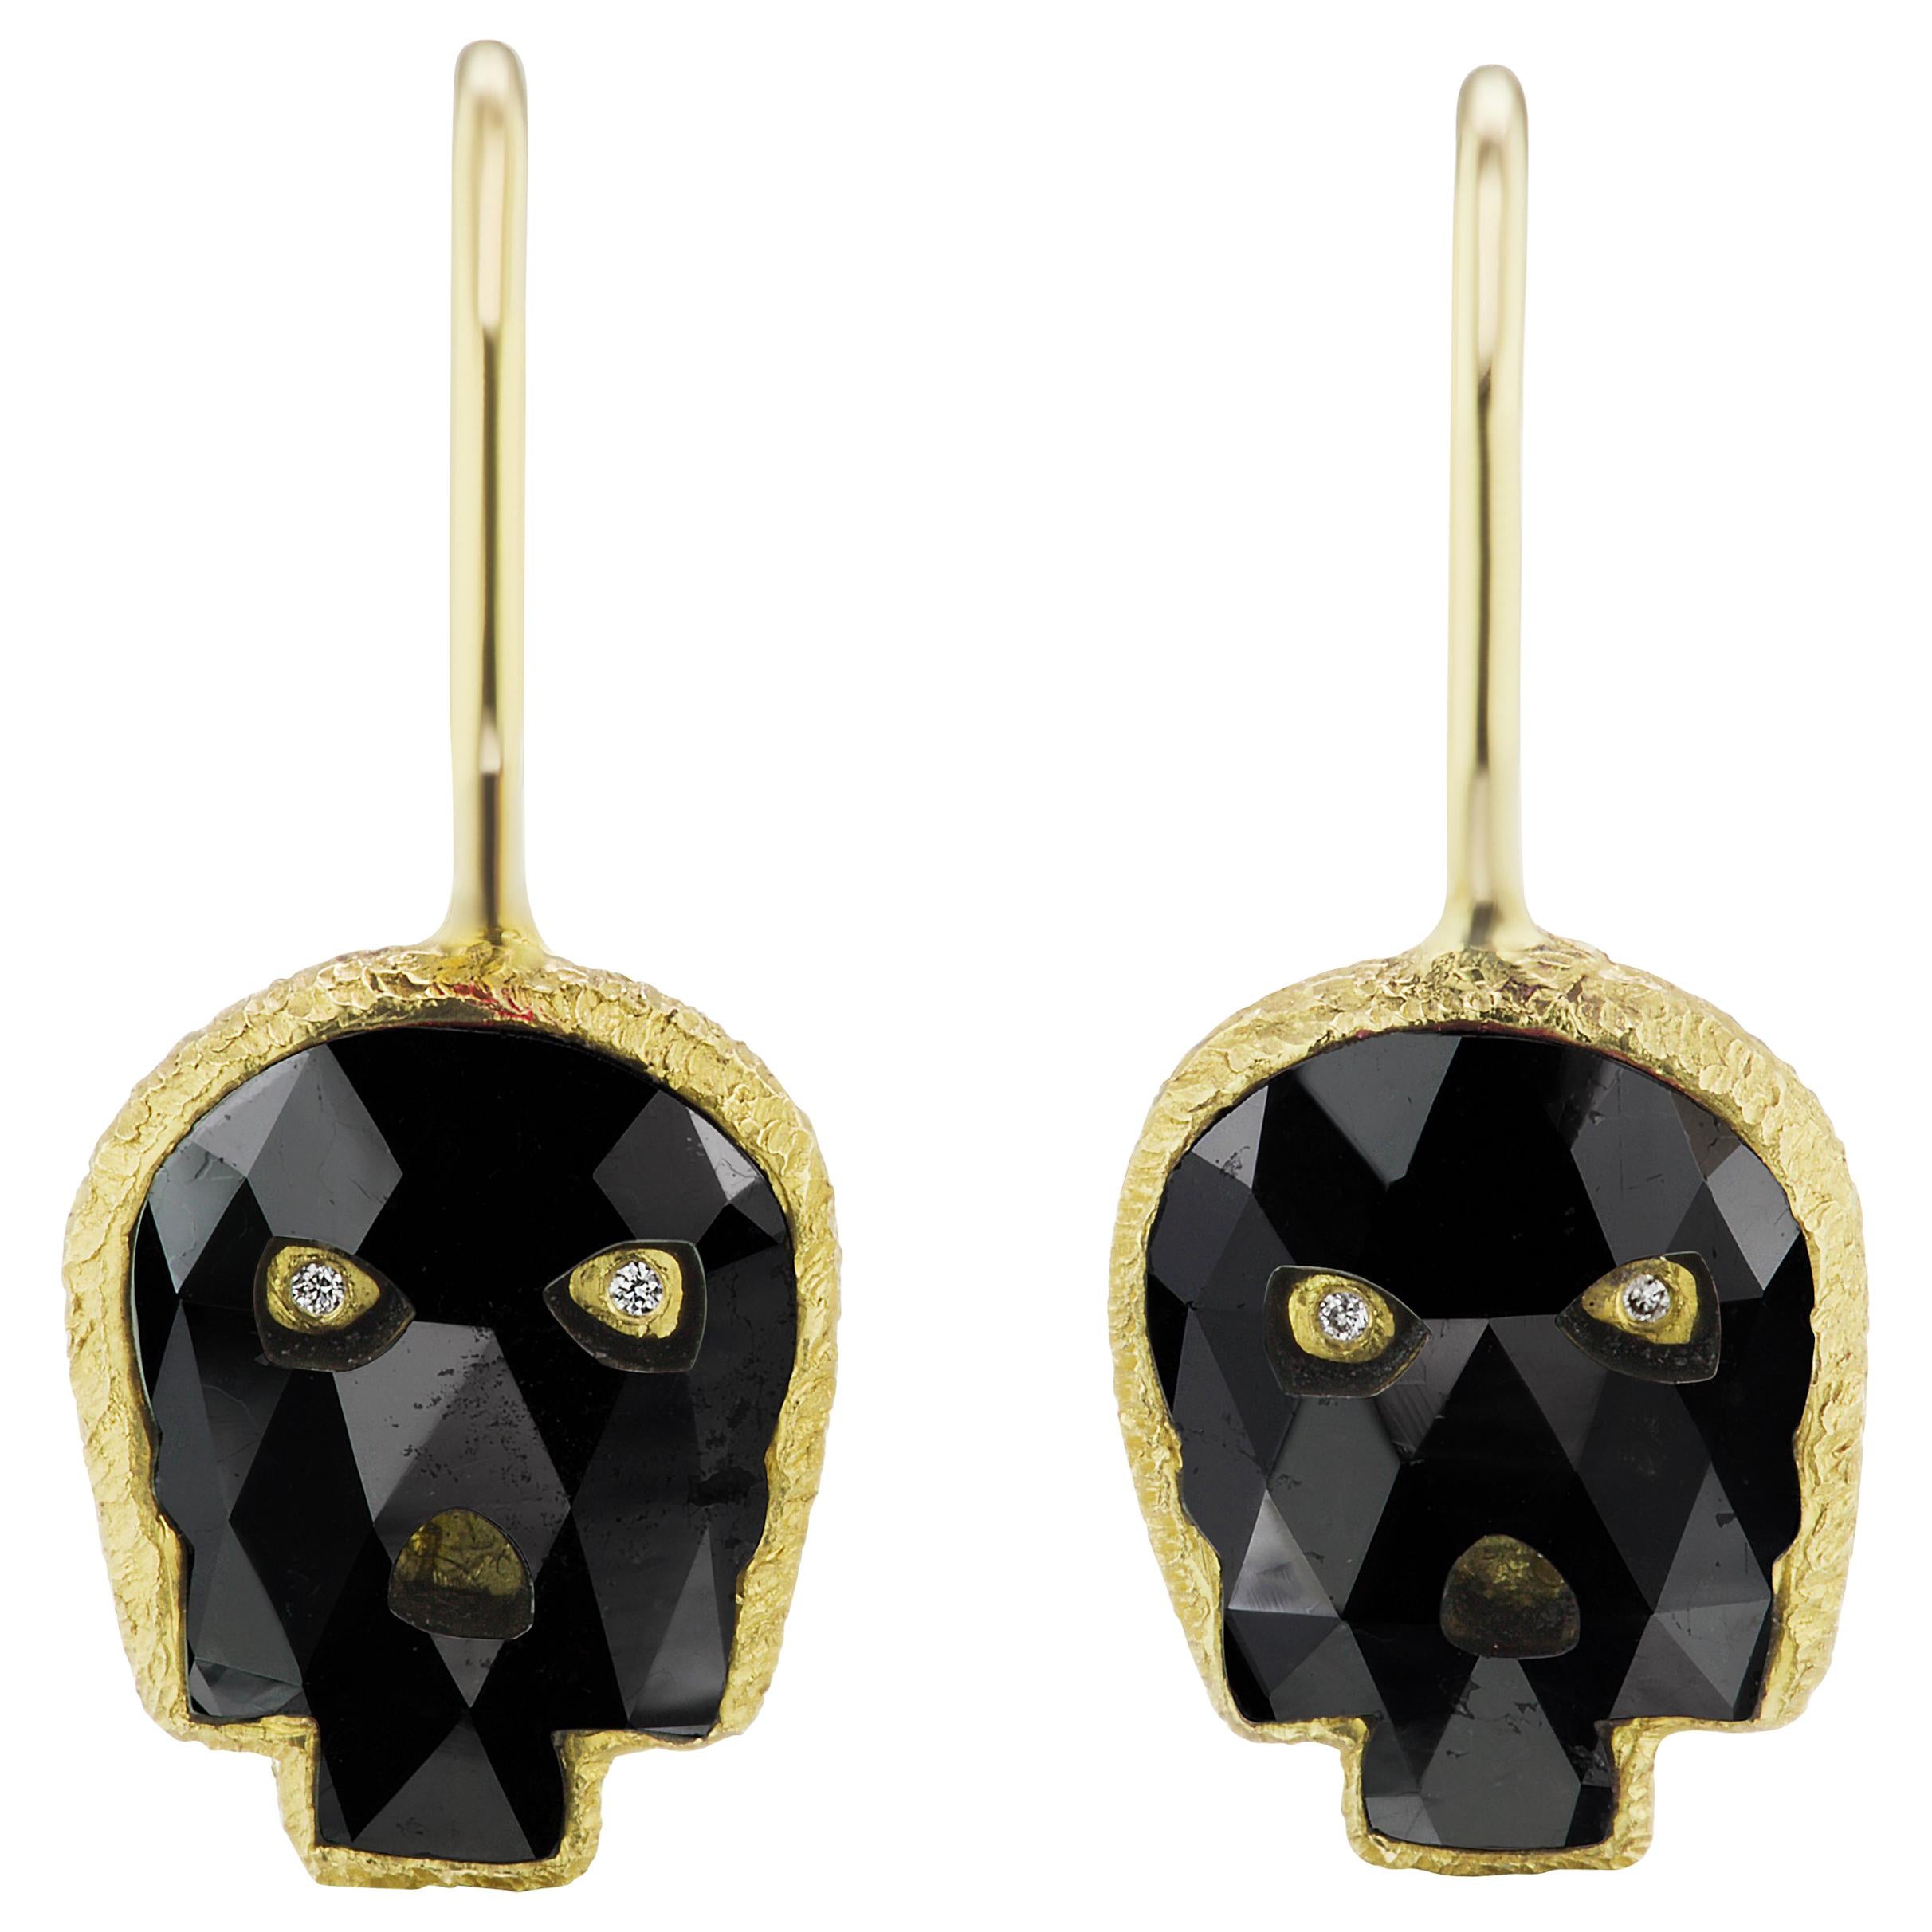 Wendy Brandes Fancy-Cut 2.54 Carat Black Diamond Skull Earrings